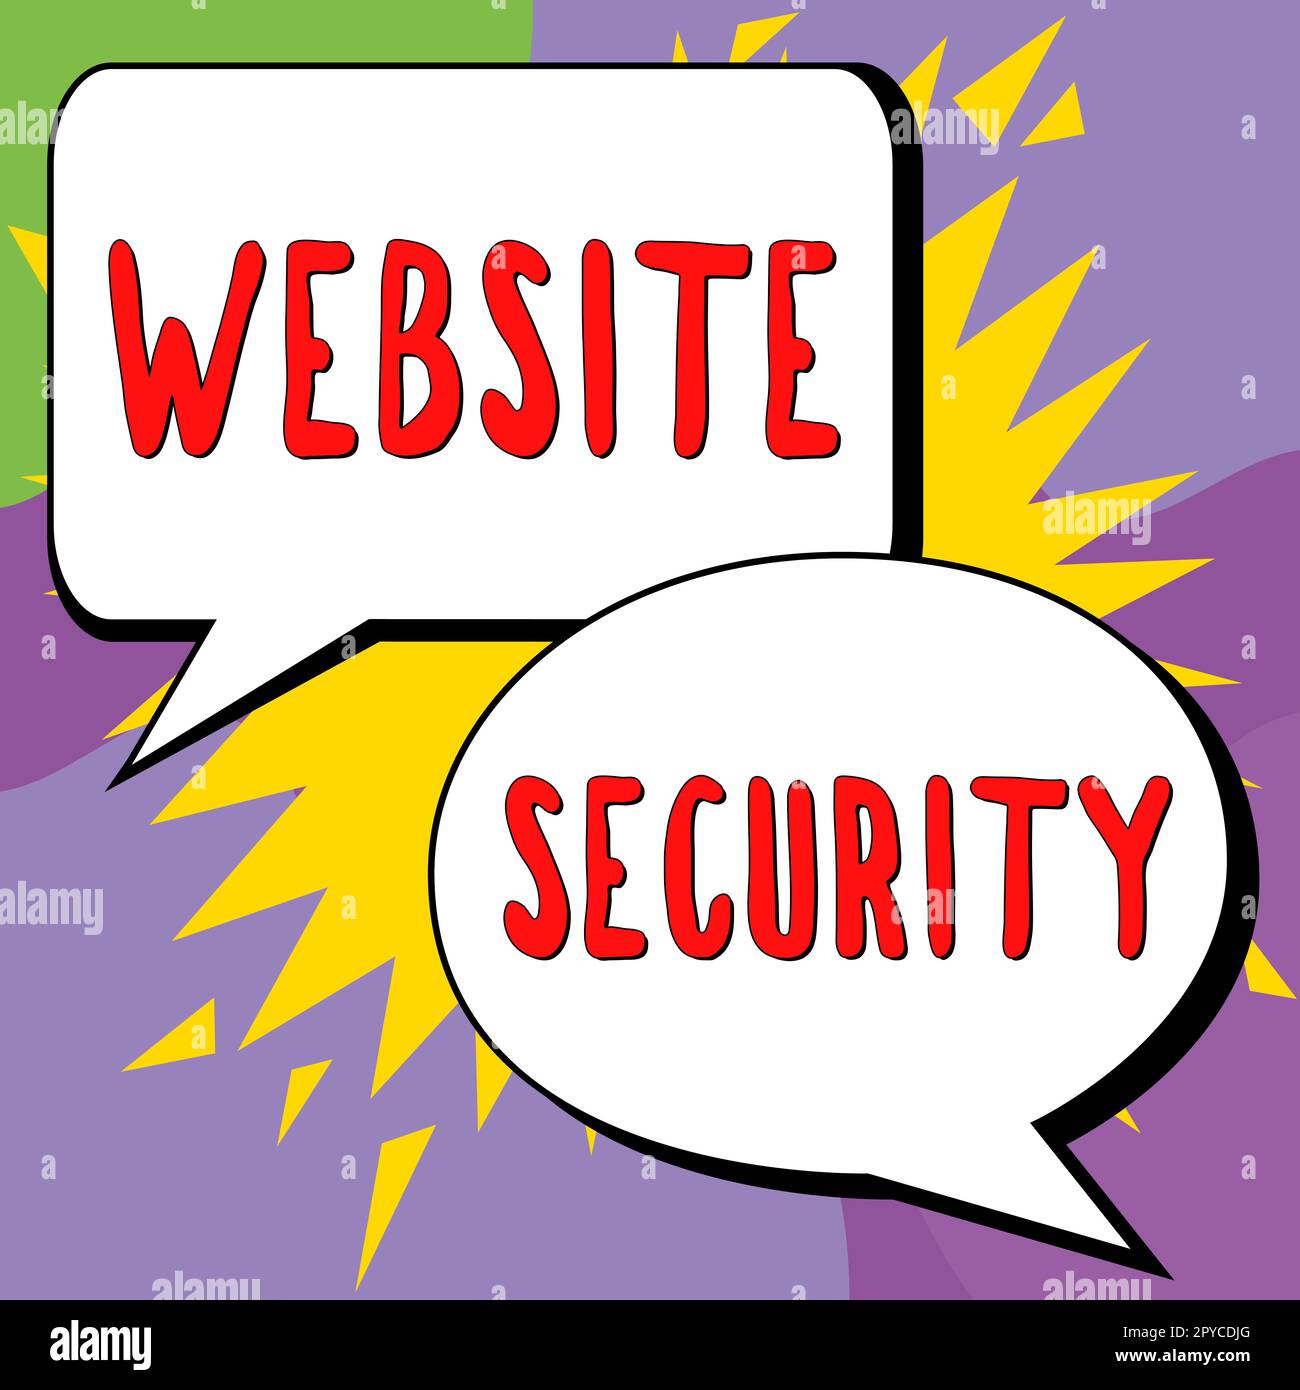 Schild mit Anzeige der Website-Sicherheit. Konzept, das eine wichtige Komponente zum Schutz und zur Sicherung von Websites darstellt Stockfoto